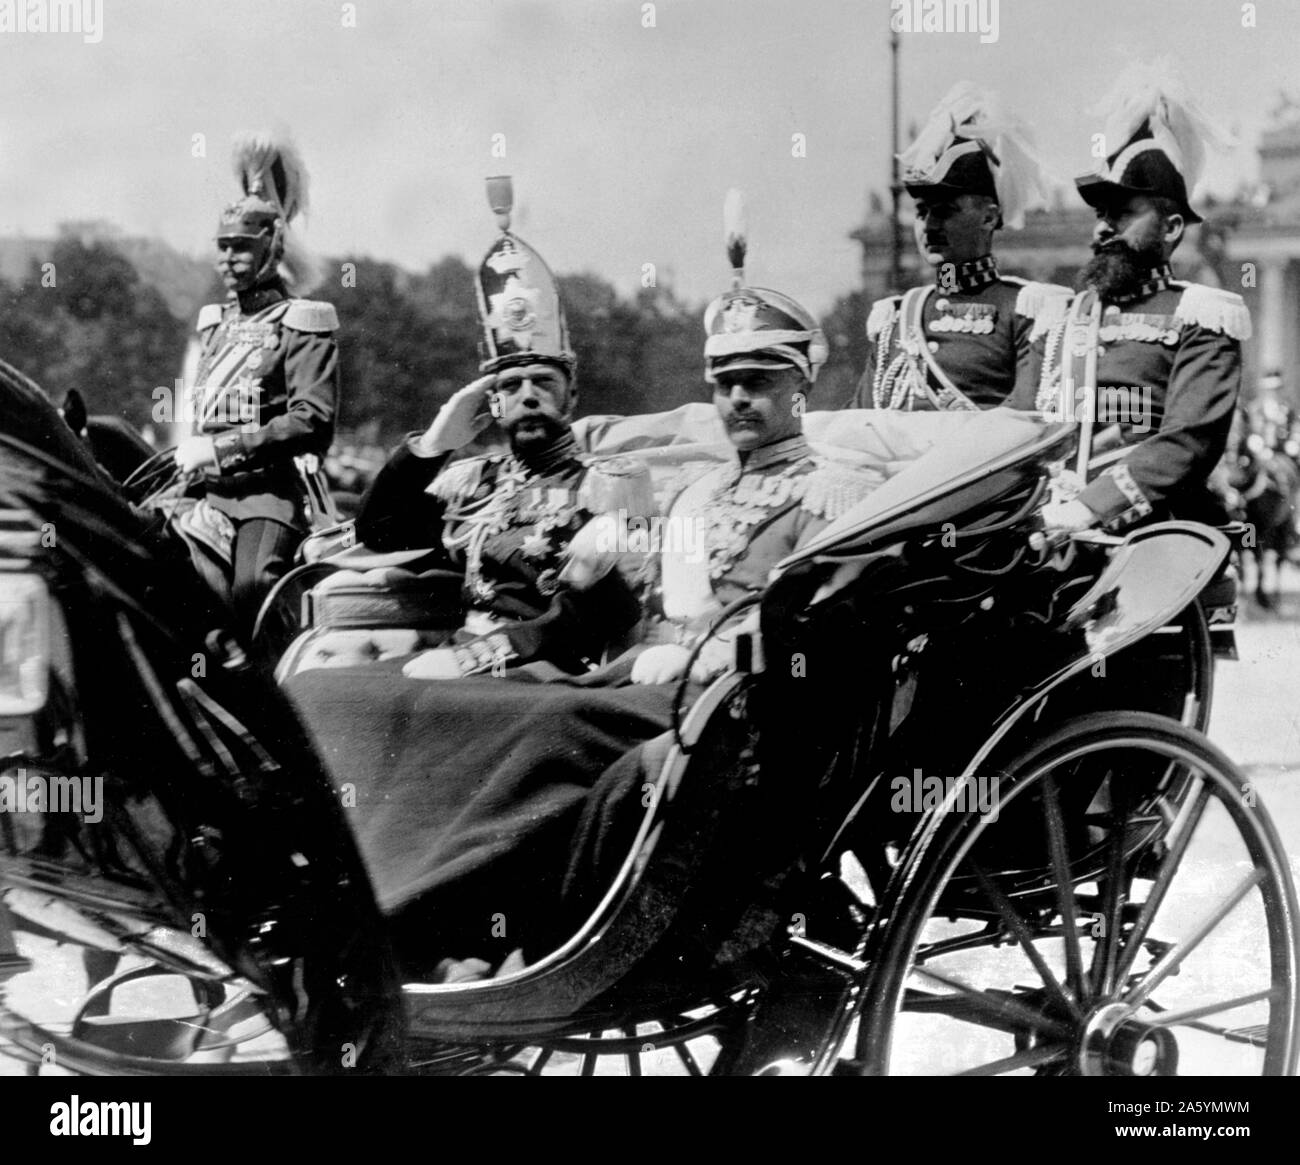 Foto von Zar Nikolaus II. von der Russischen königlichen Familie. Letzte Kaiser von Russland, Großherzog von Finnland, und König von Polen. Zeigt die Zaren in einer Pferdekutsche und volle Uniform. Stockfoto